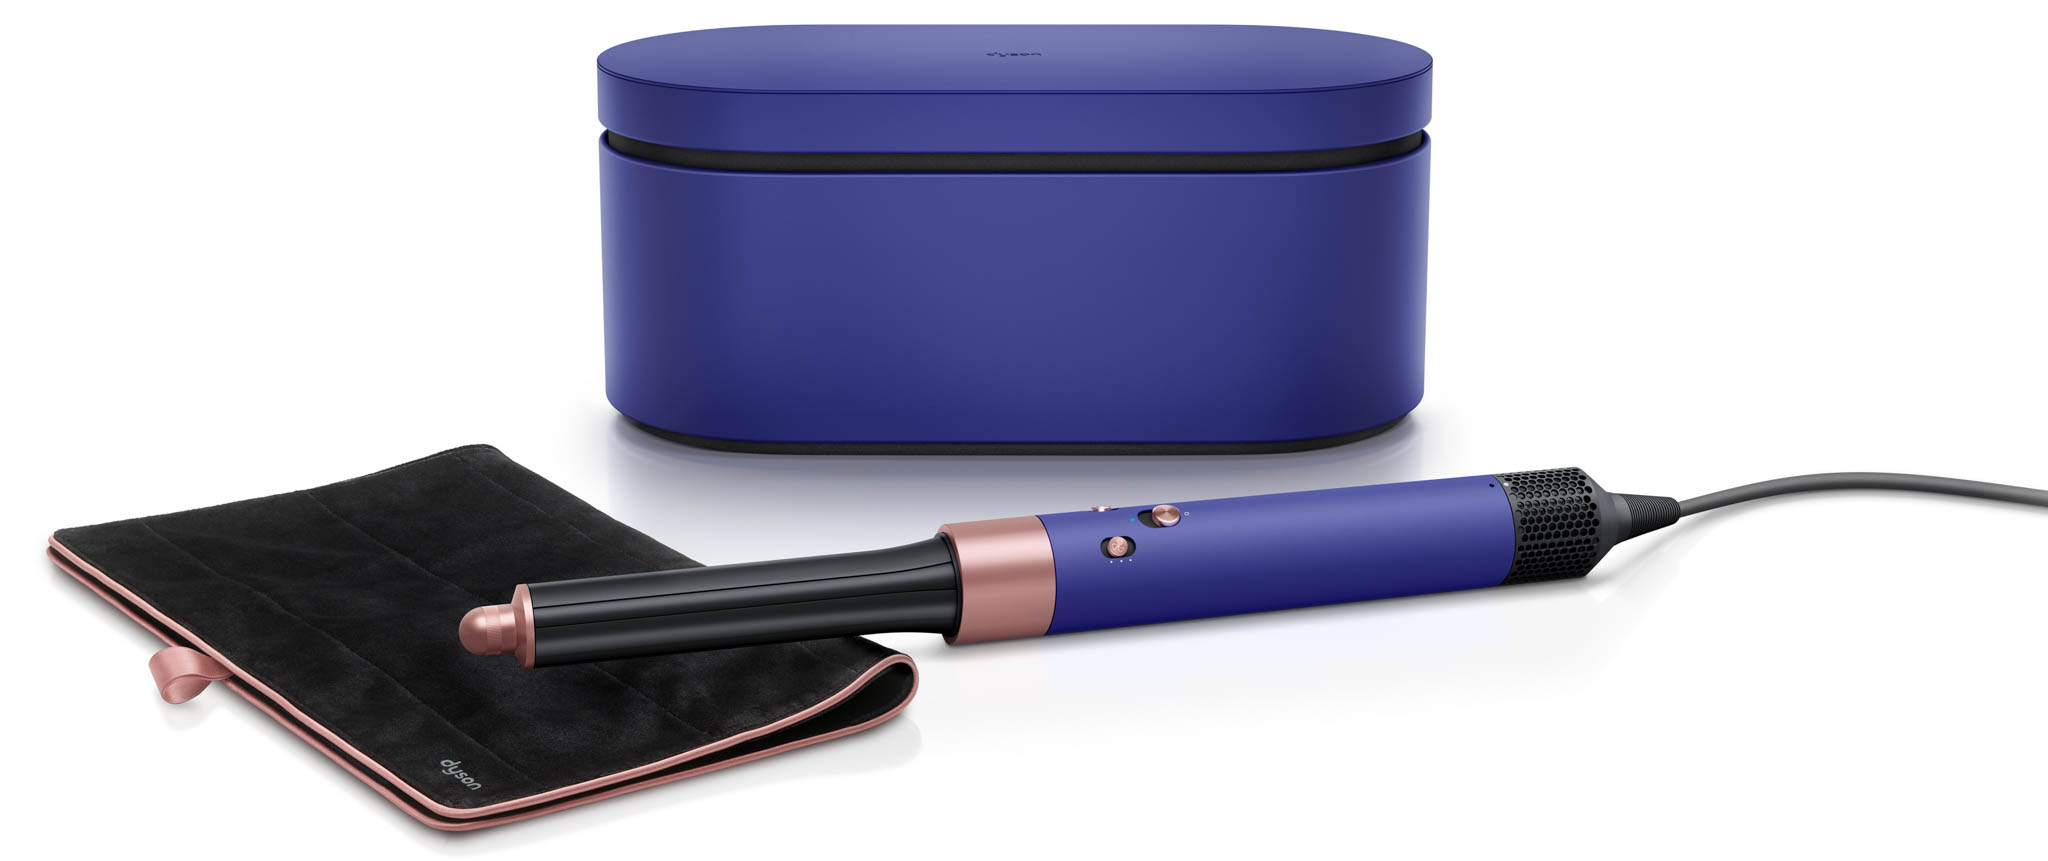 Dyson giới thiệu máy tạo kiểu tóc Airwrap phiên bản giới hạn với màu sắc mới Vinca Blue & Rosé